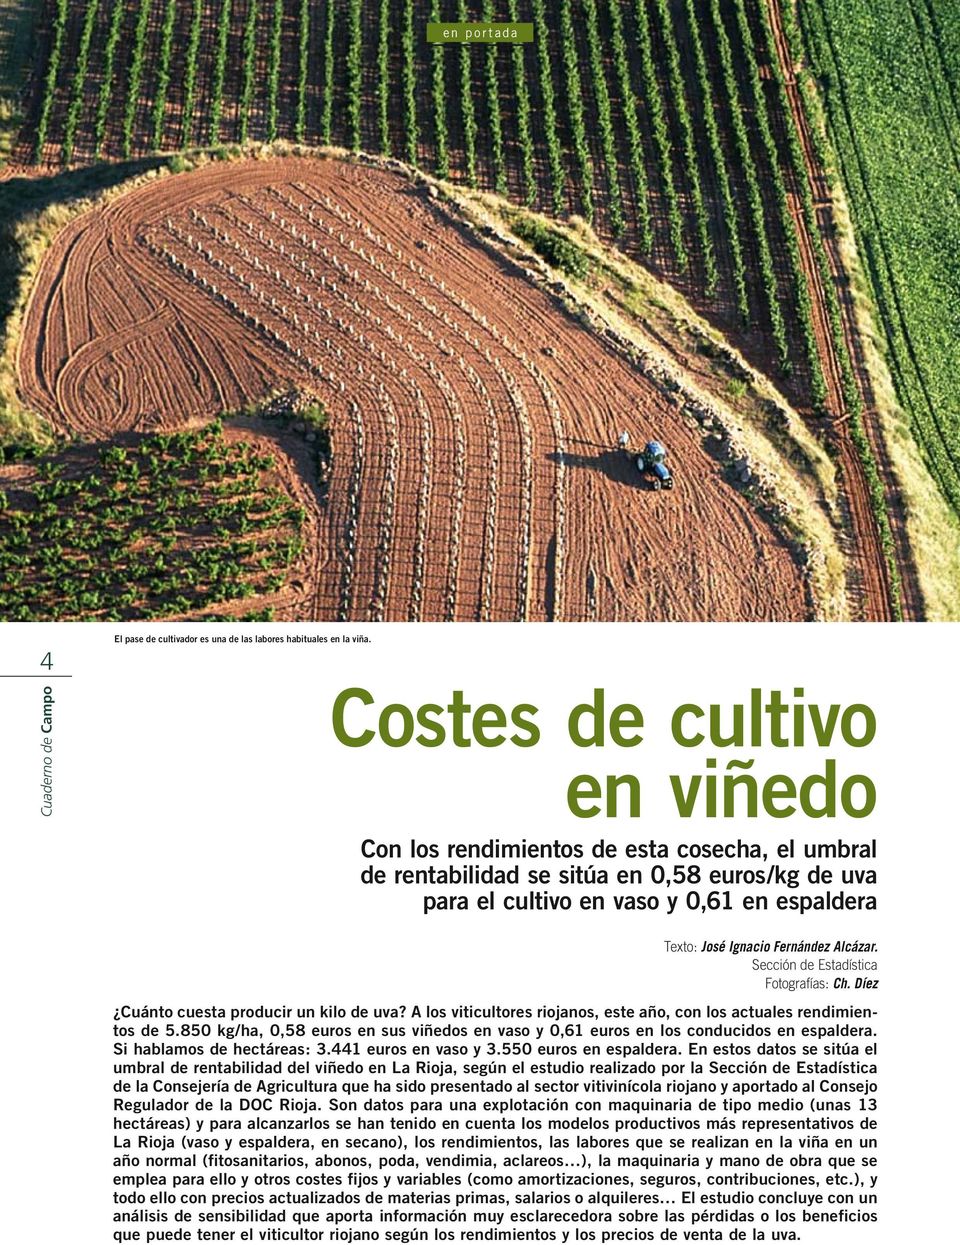 Alcázar. Sección de Estadística Fotografías: Ch. Díez Cuánto cuesta producir un kilo de uva? A los viticultores riojanos, este año, con los actuales rendimientos de 5.